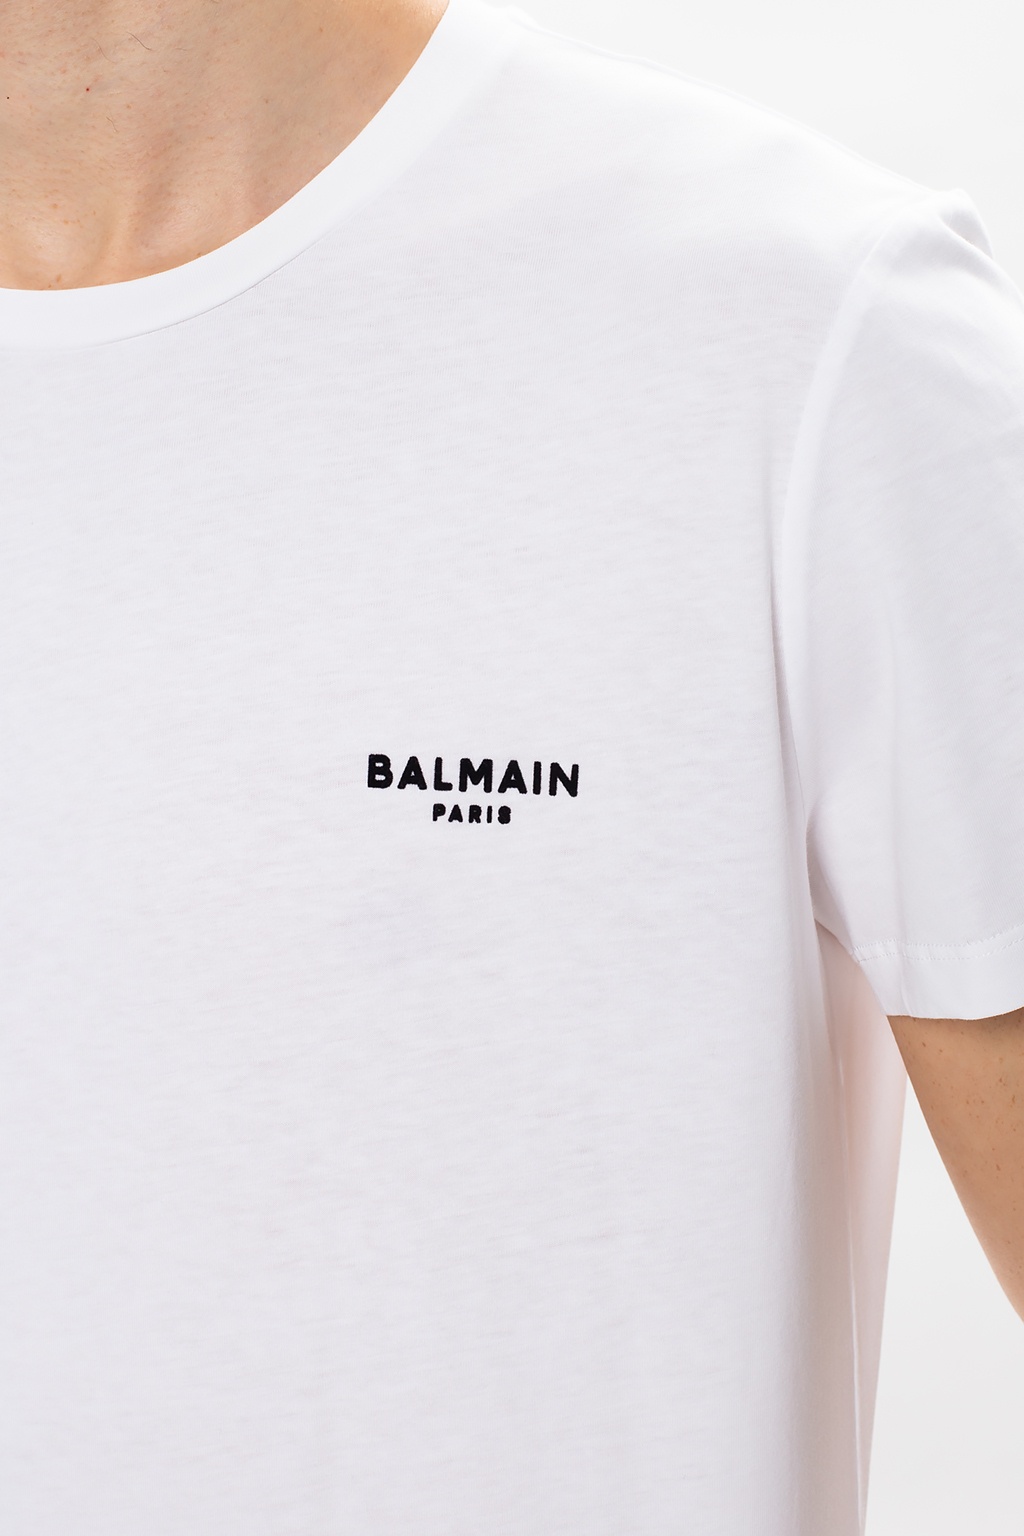 Balmain Balmain MEN ACTIVEWEAR tops & t-shirts